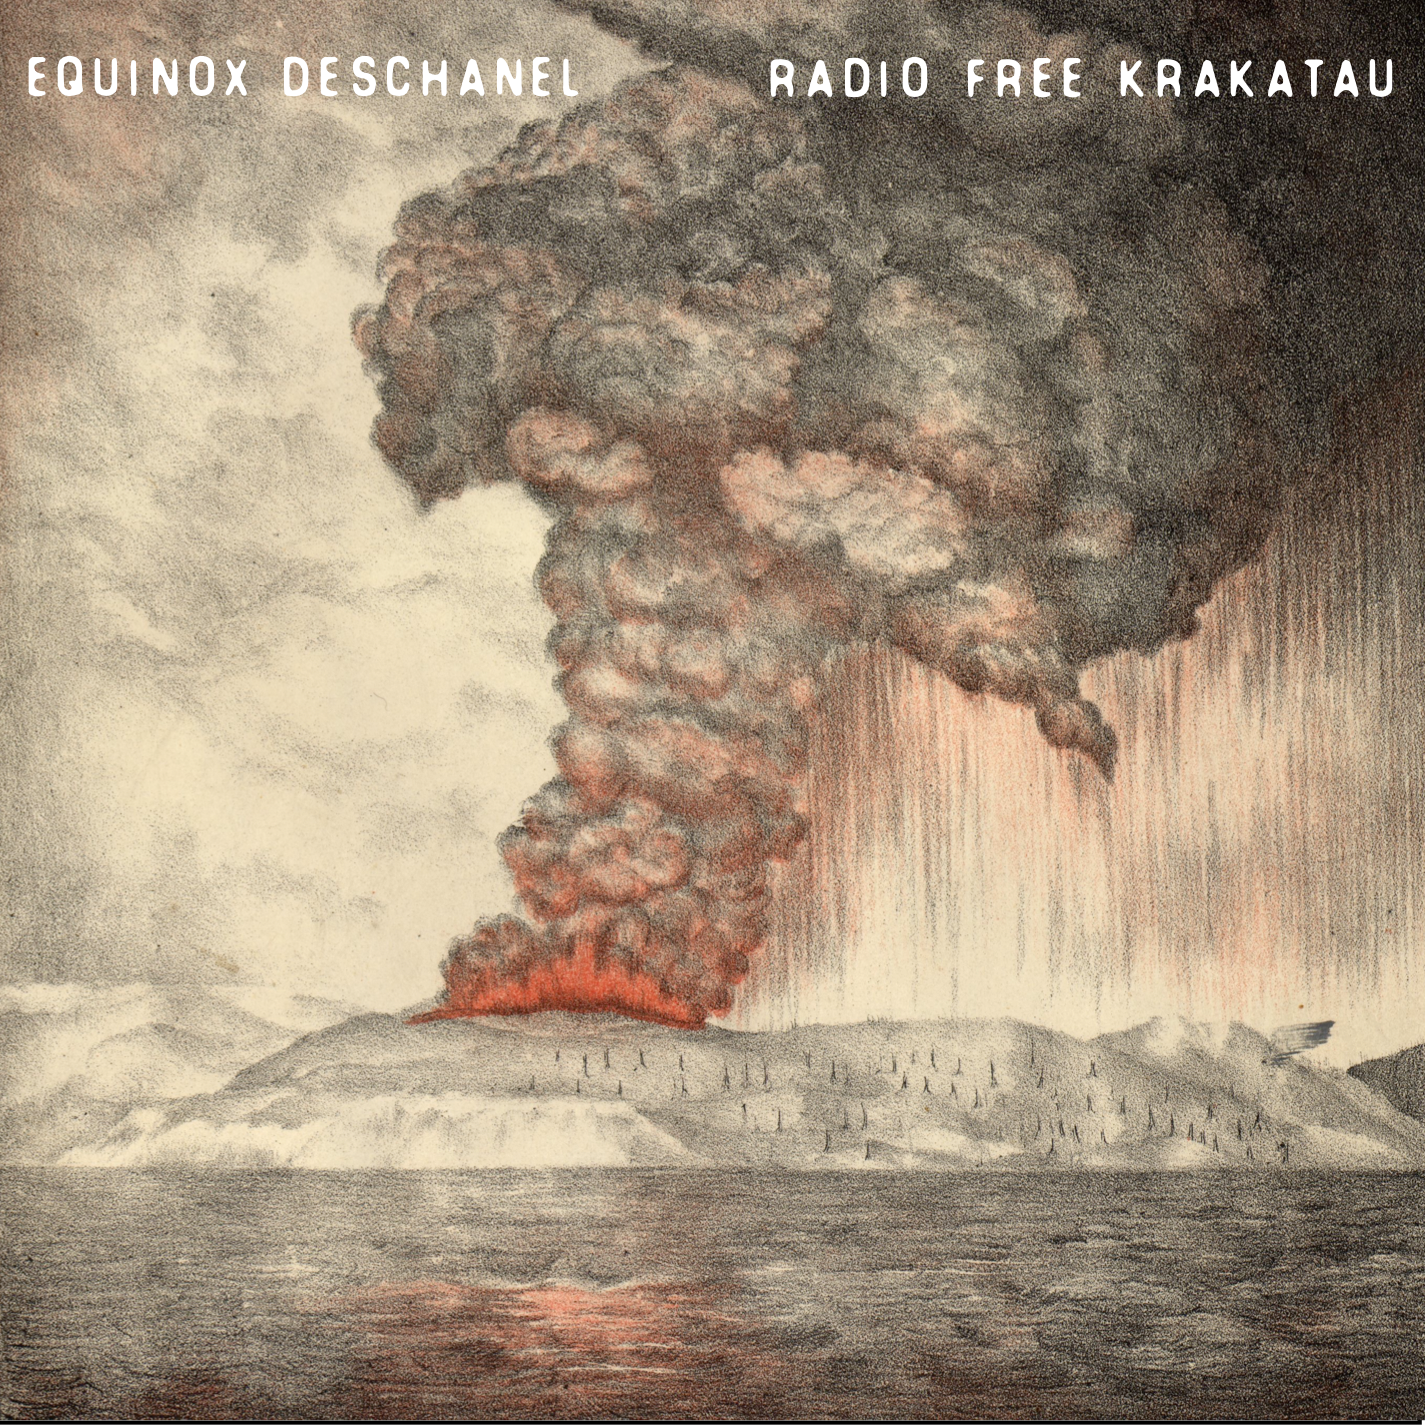 Radio Free Krakatau